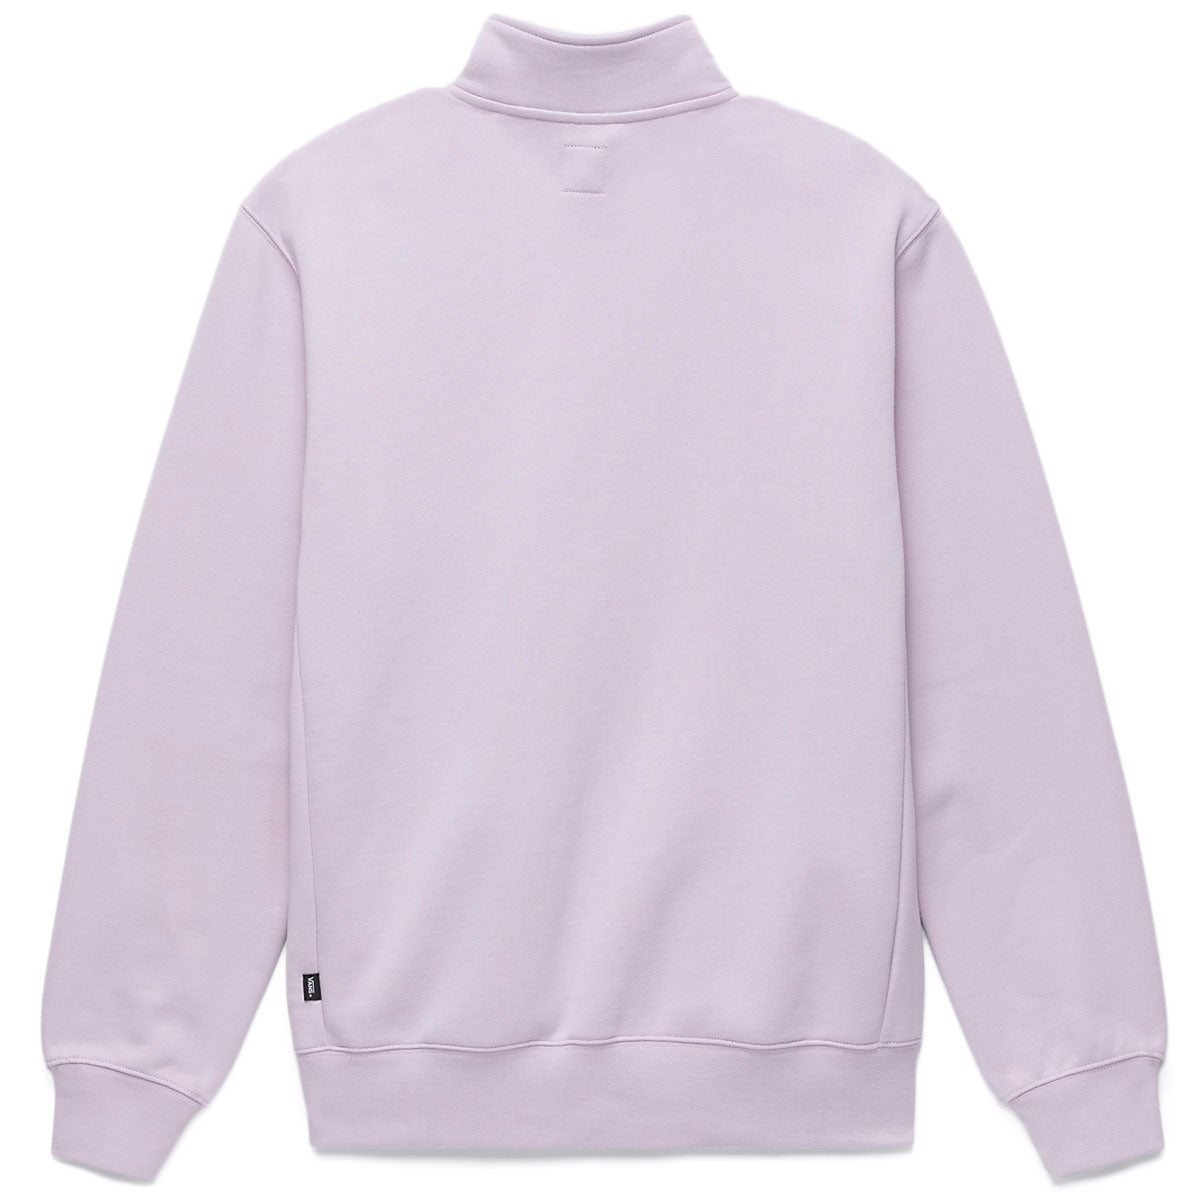 Vans Pocket Q Zip Sweatshirt - Lavender Frost